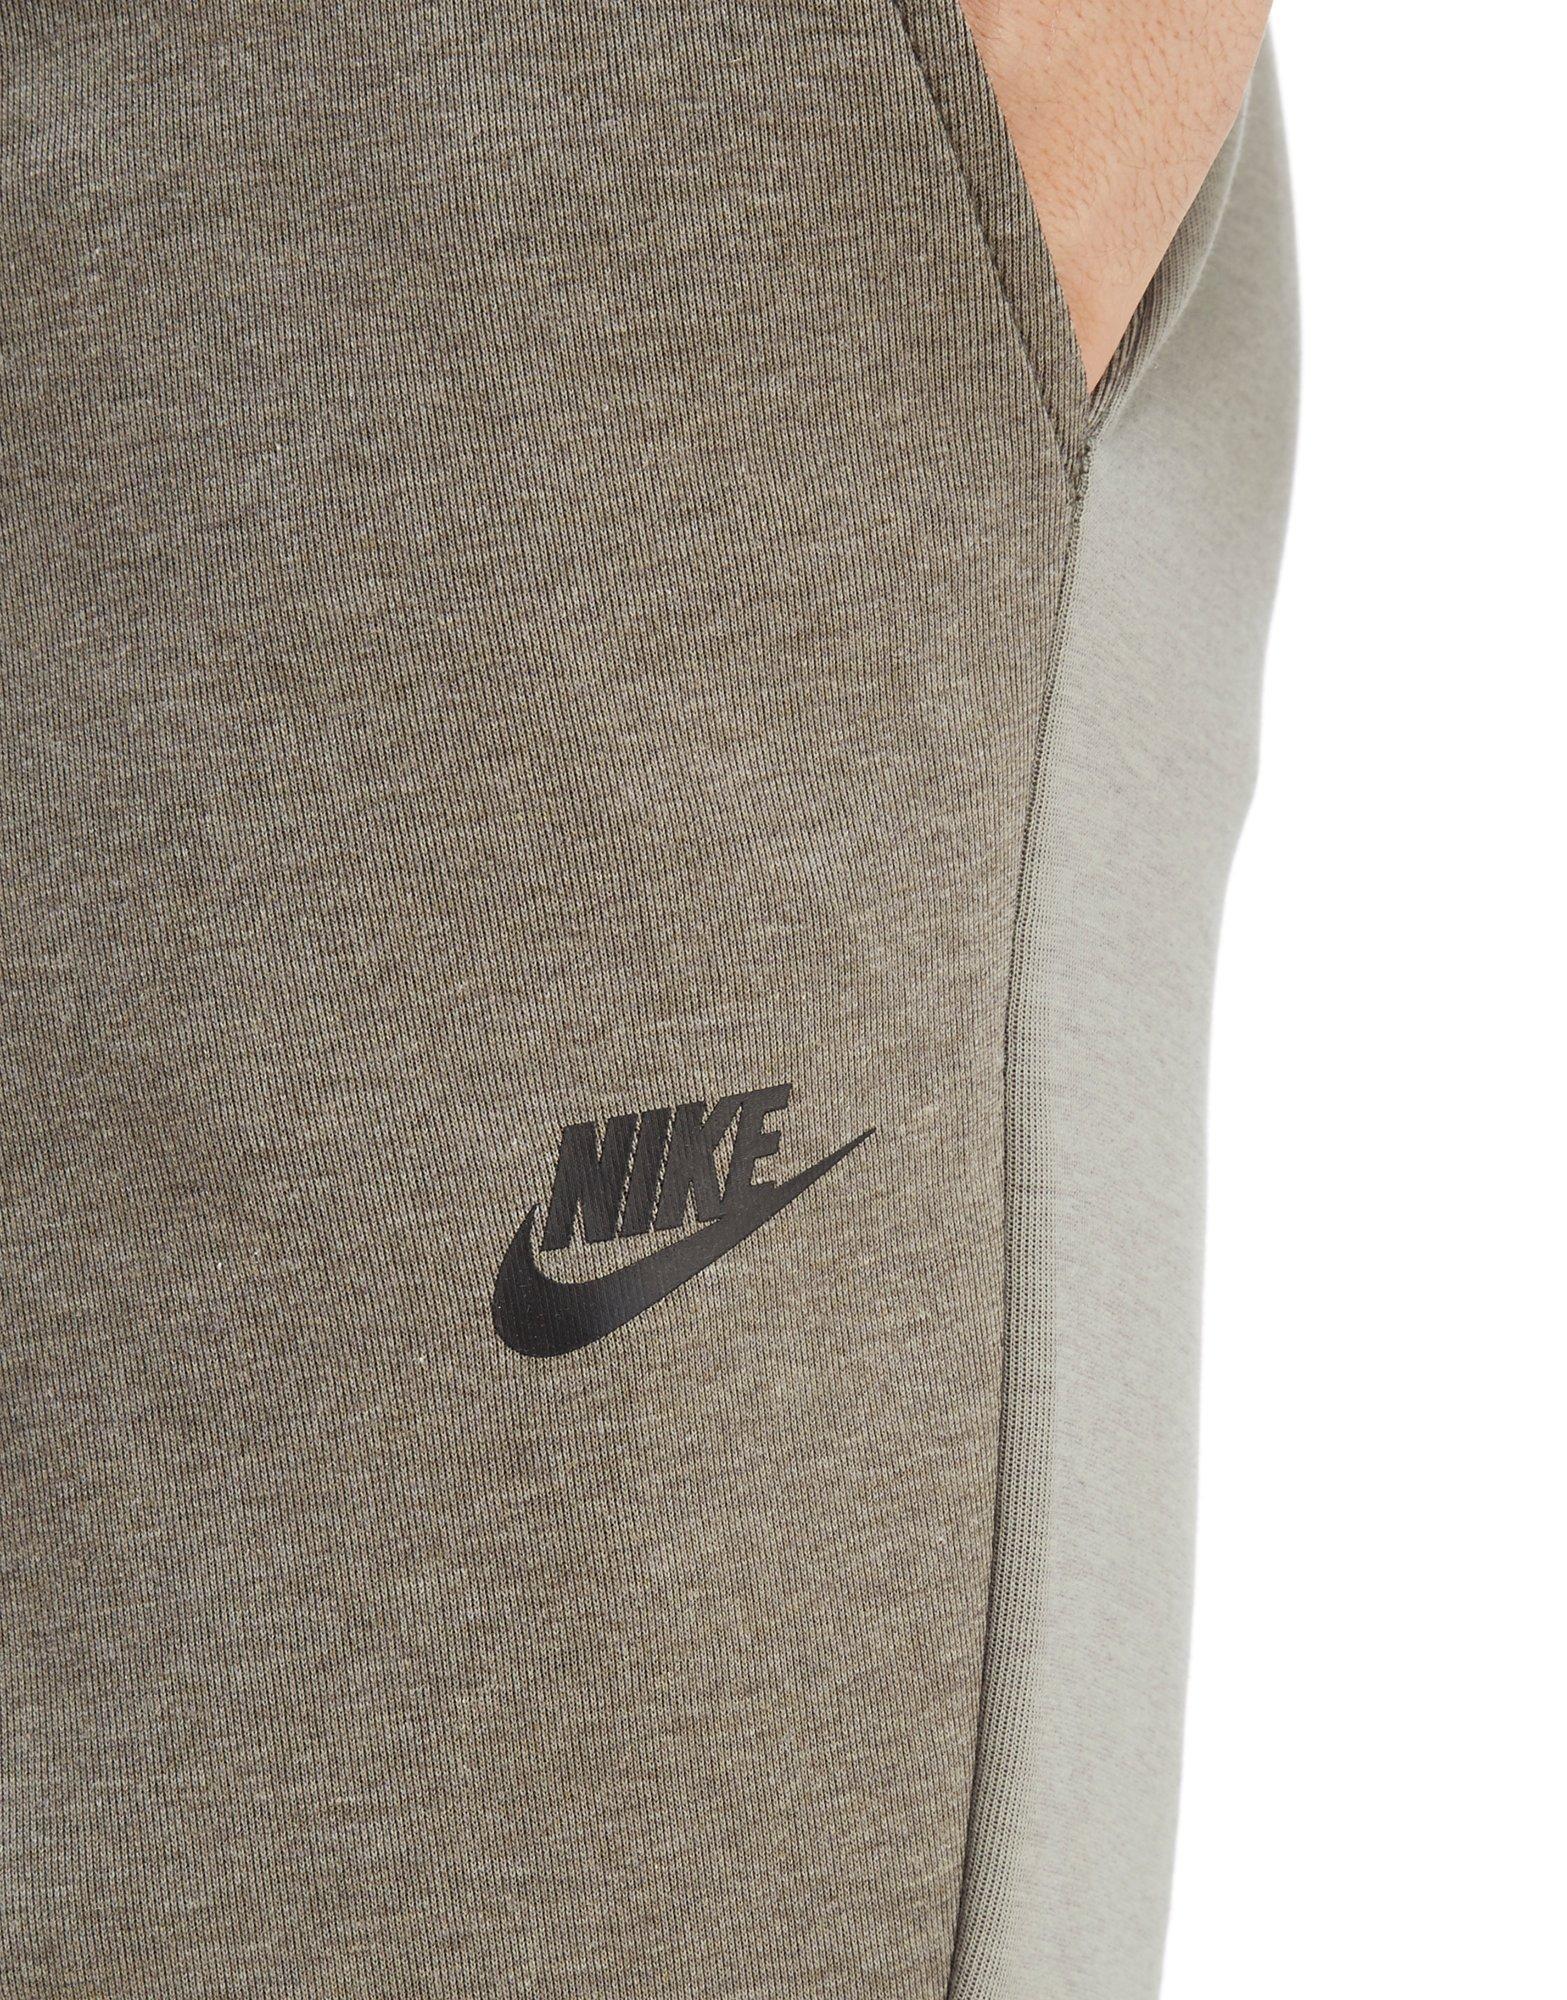 Nike Tech Fleece Shorts in Green for Men - Lyst